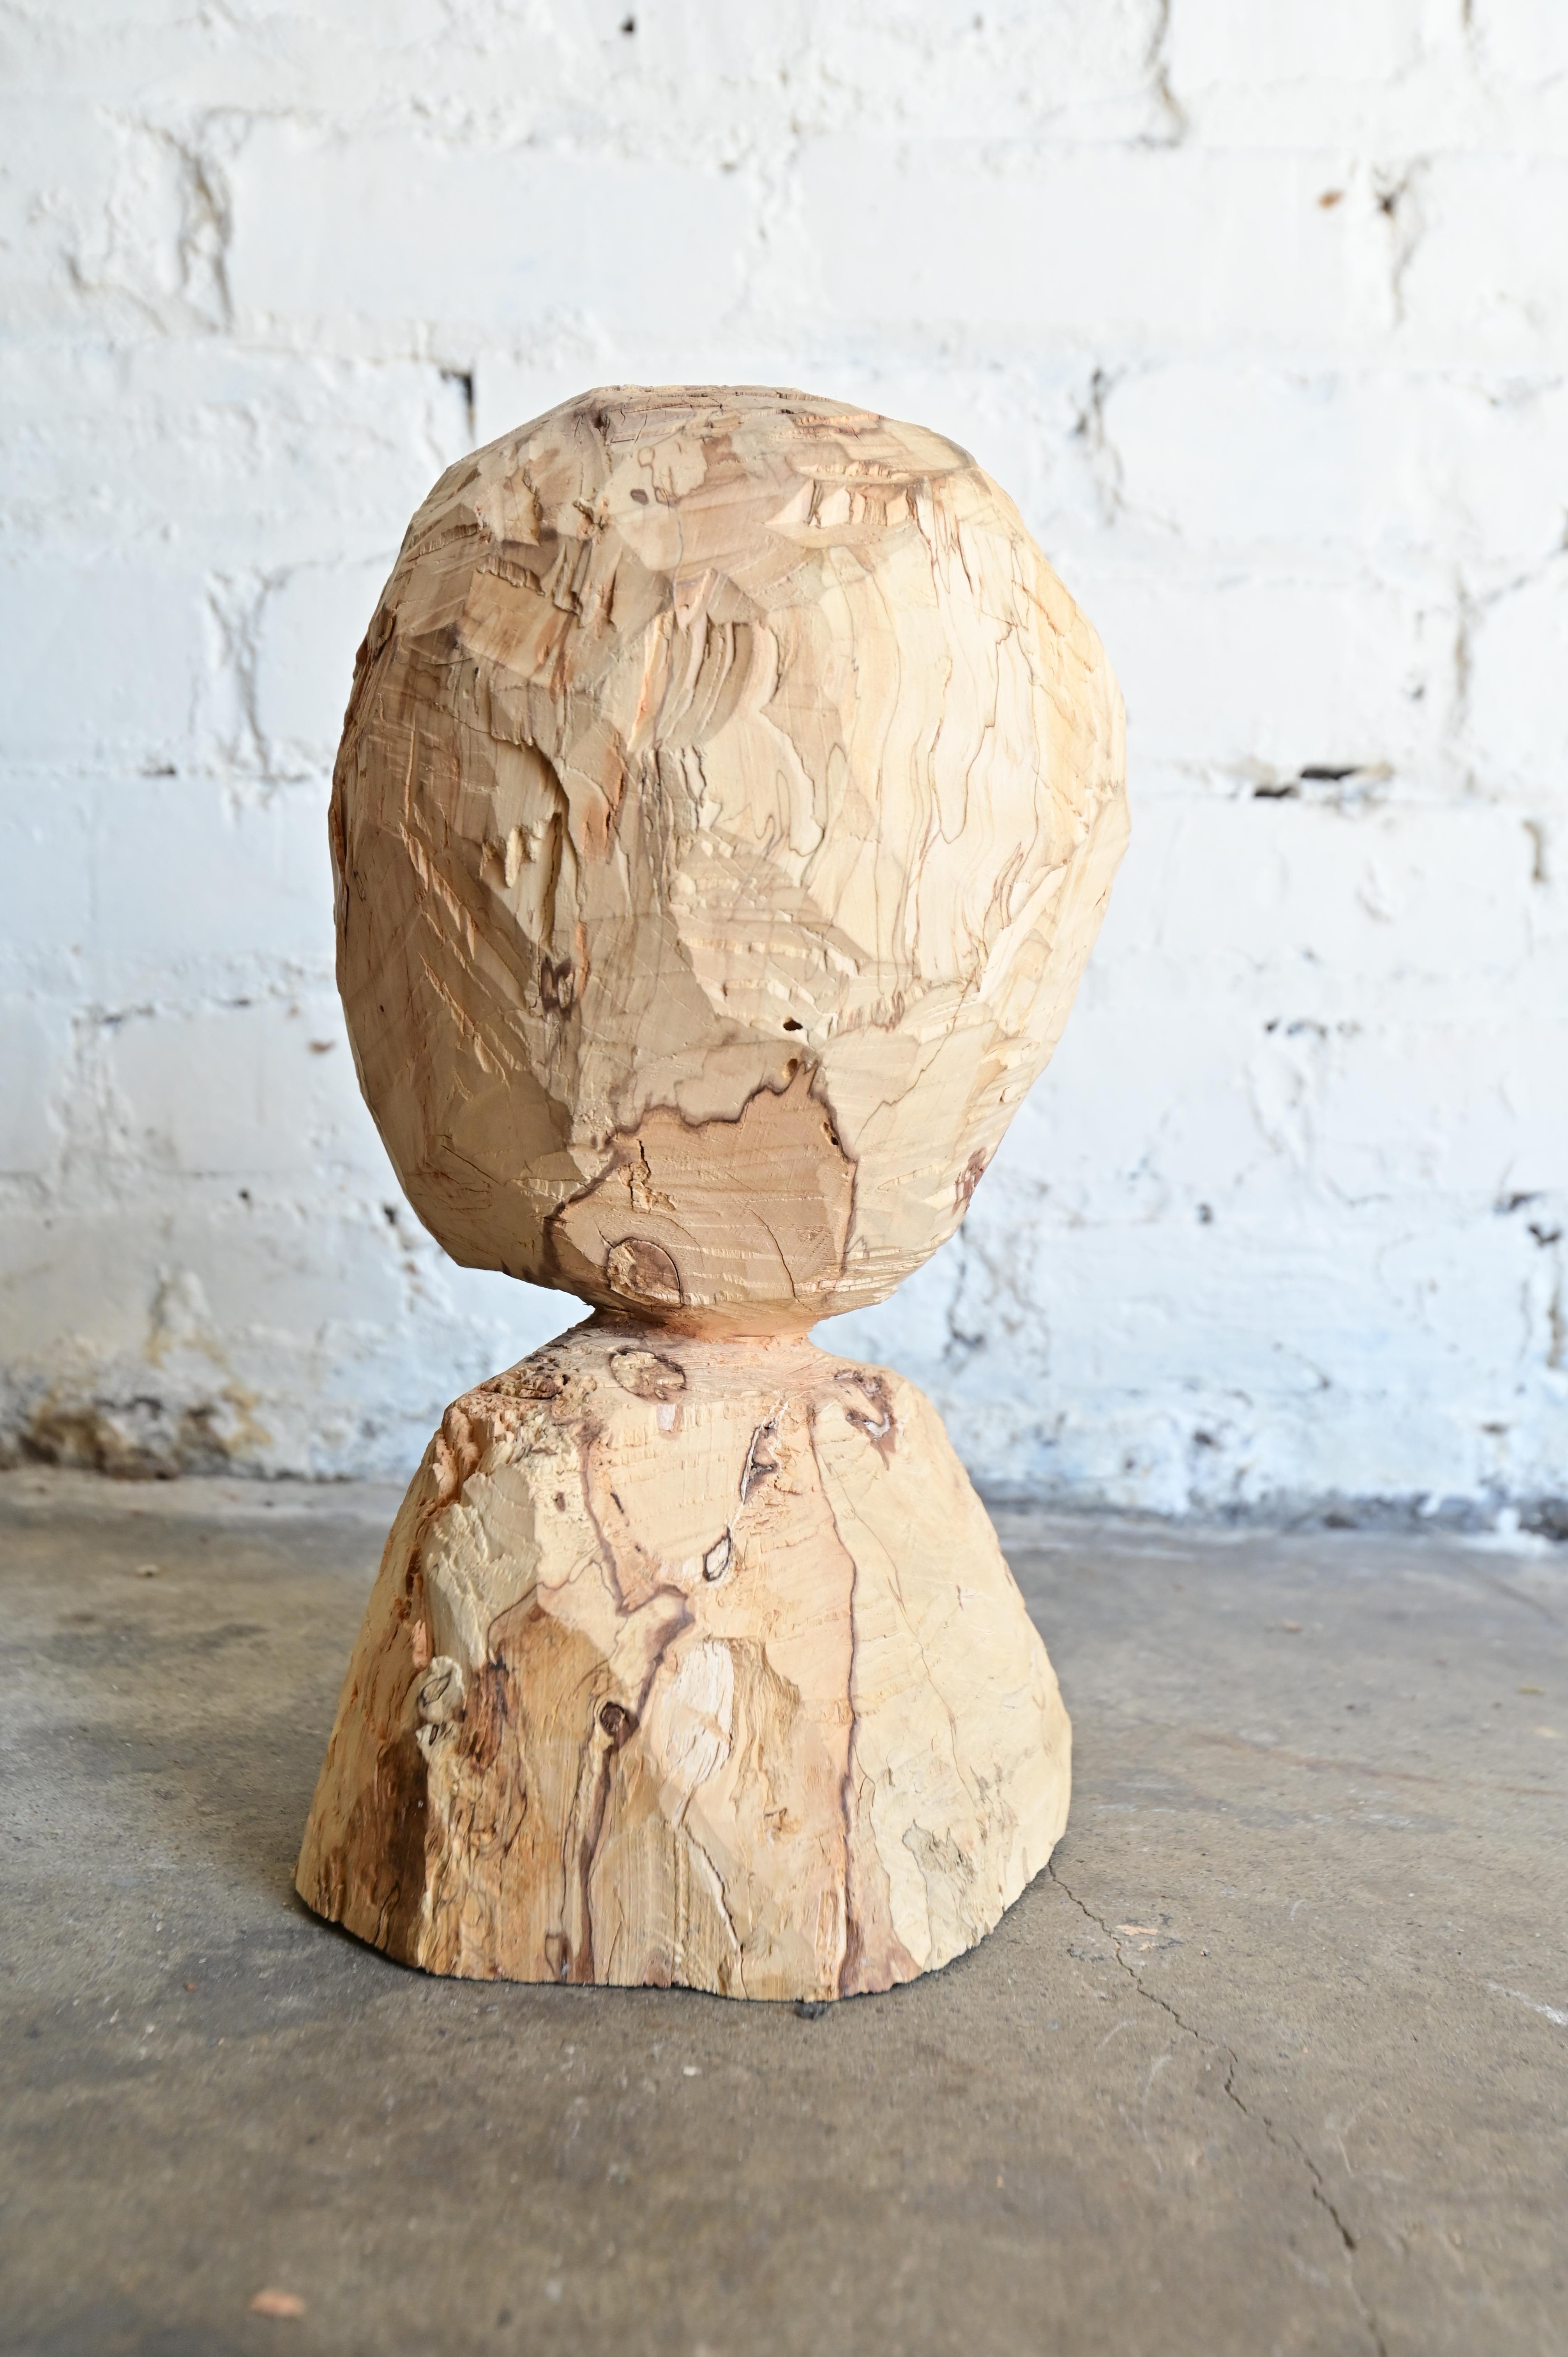 Primitive Brutalist bust, hatchet carved from solid wood. 8